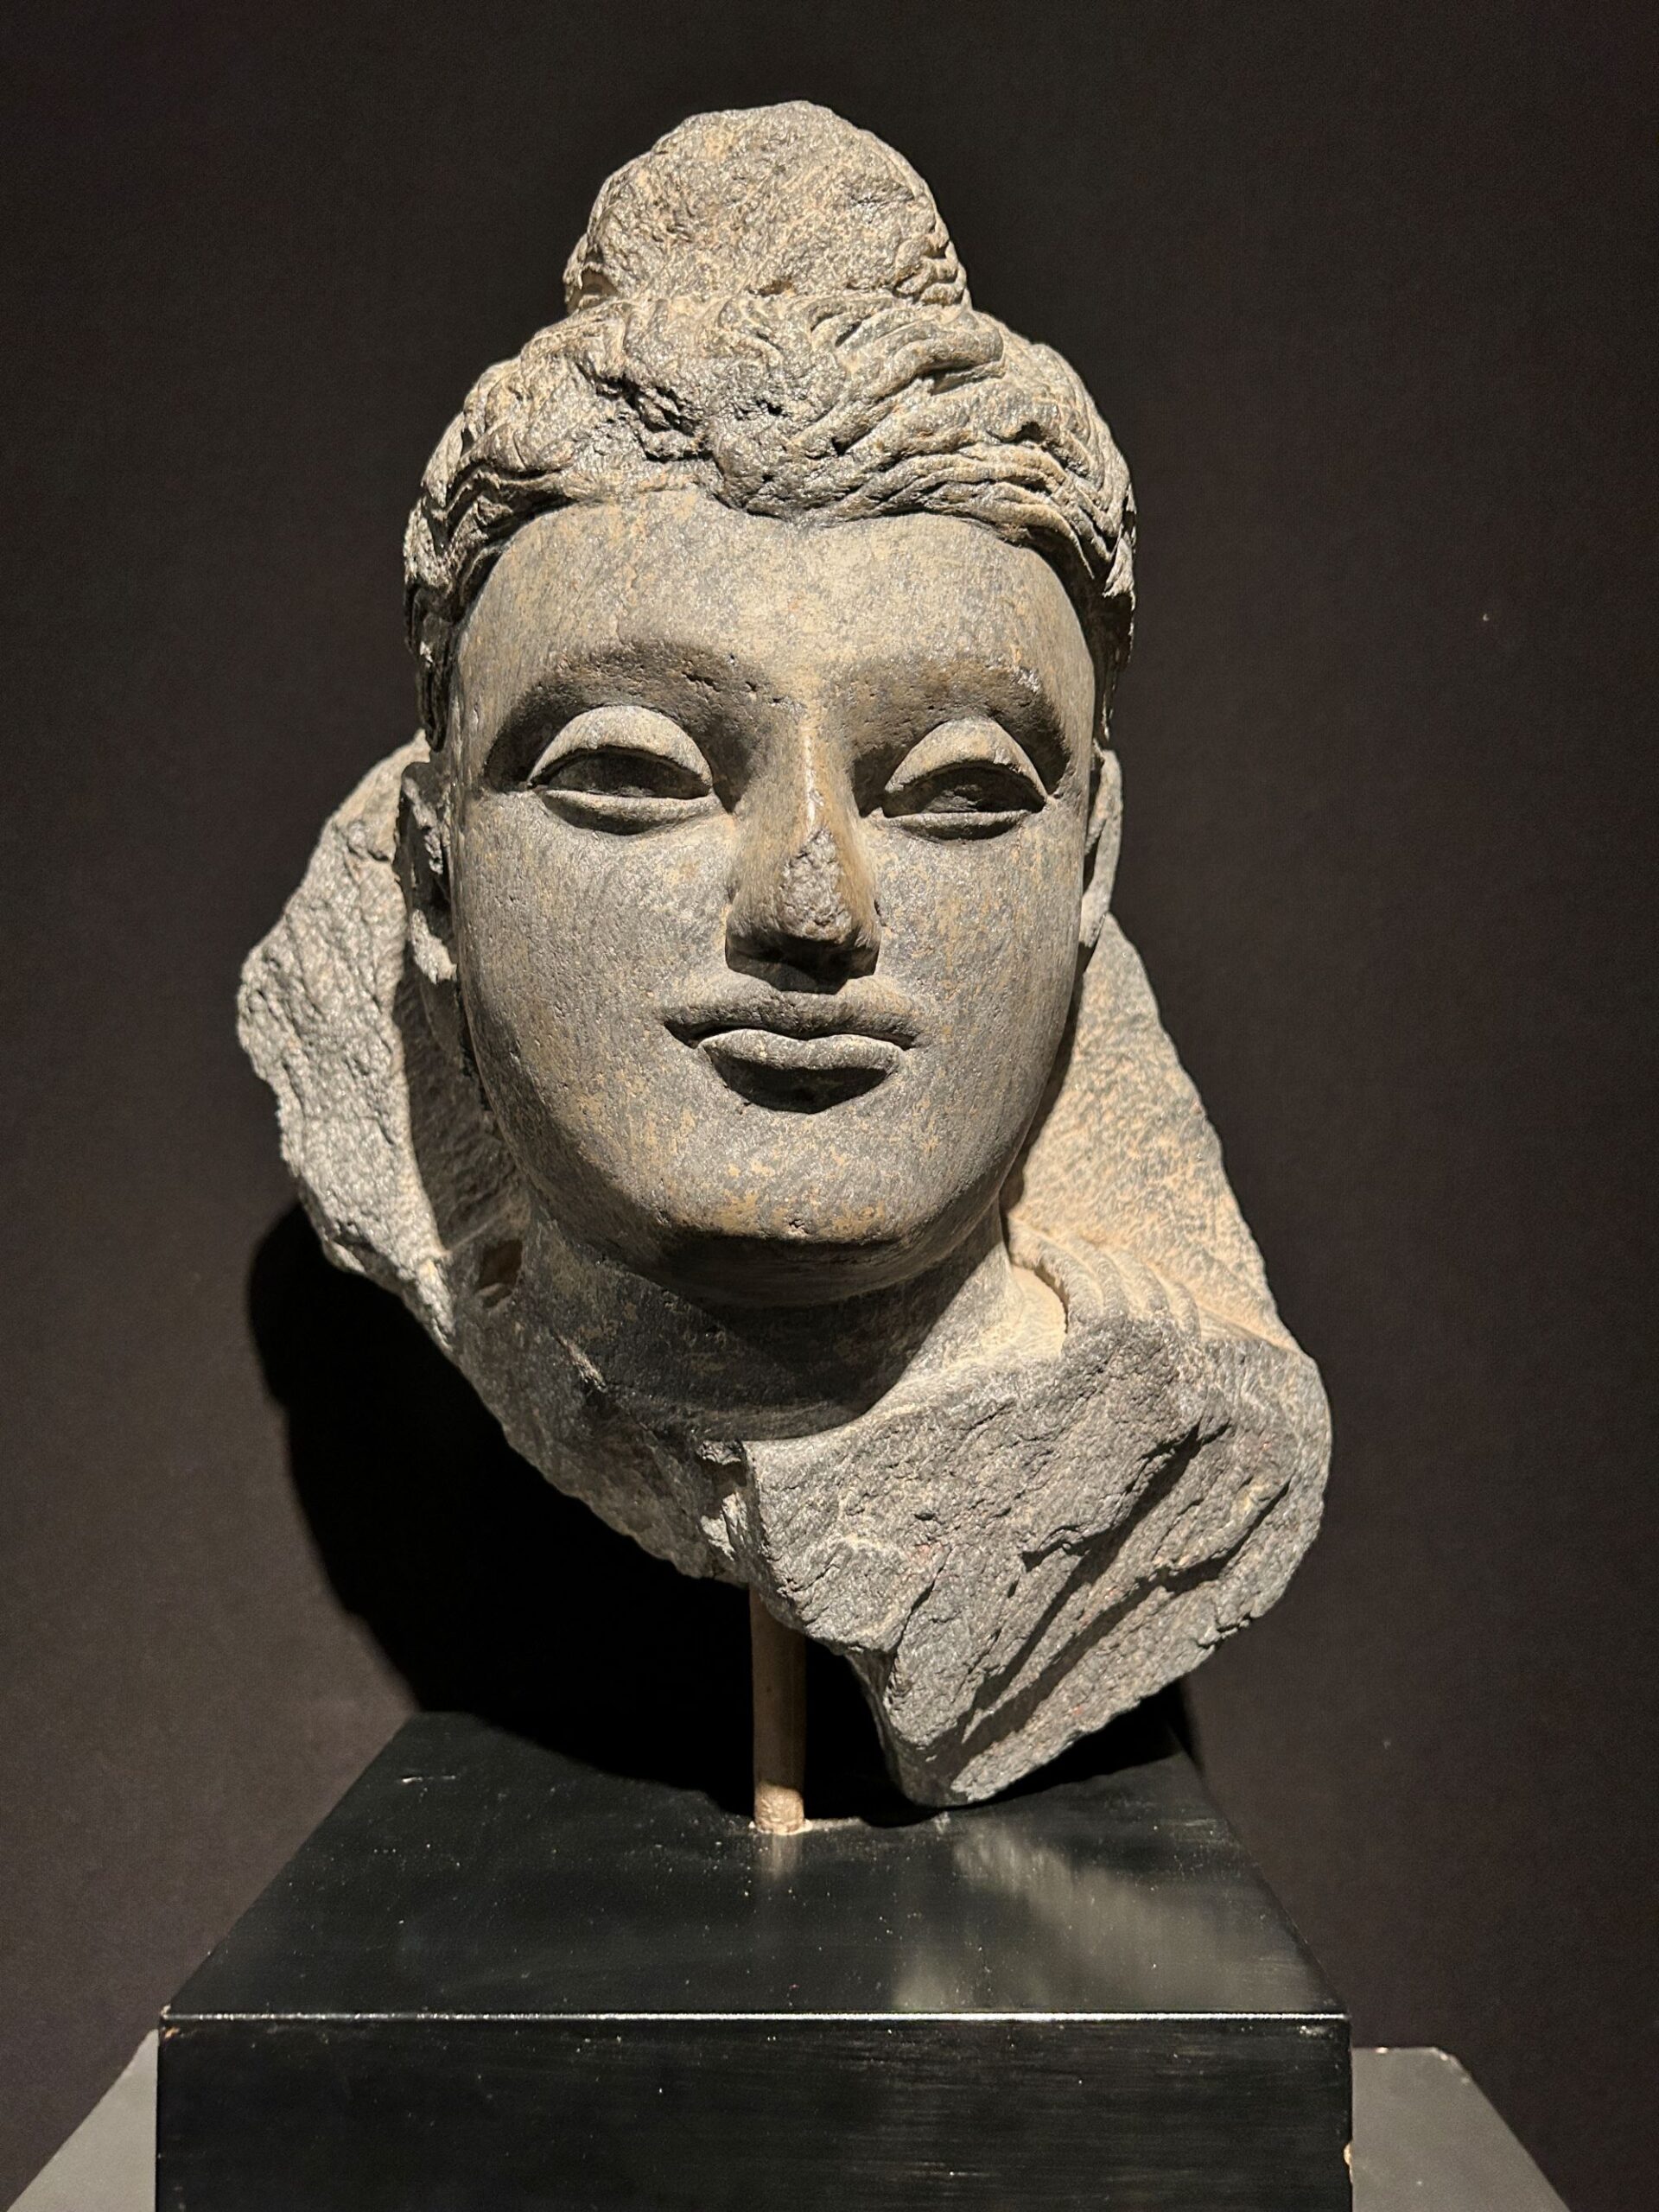 Tête de Buddha, ancienne région du Gandhara, III-IVe siècle. Schiste, 33 cm. Galerie Hioco, Paris. © OPM